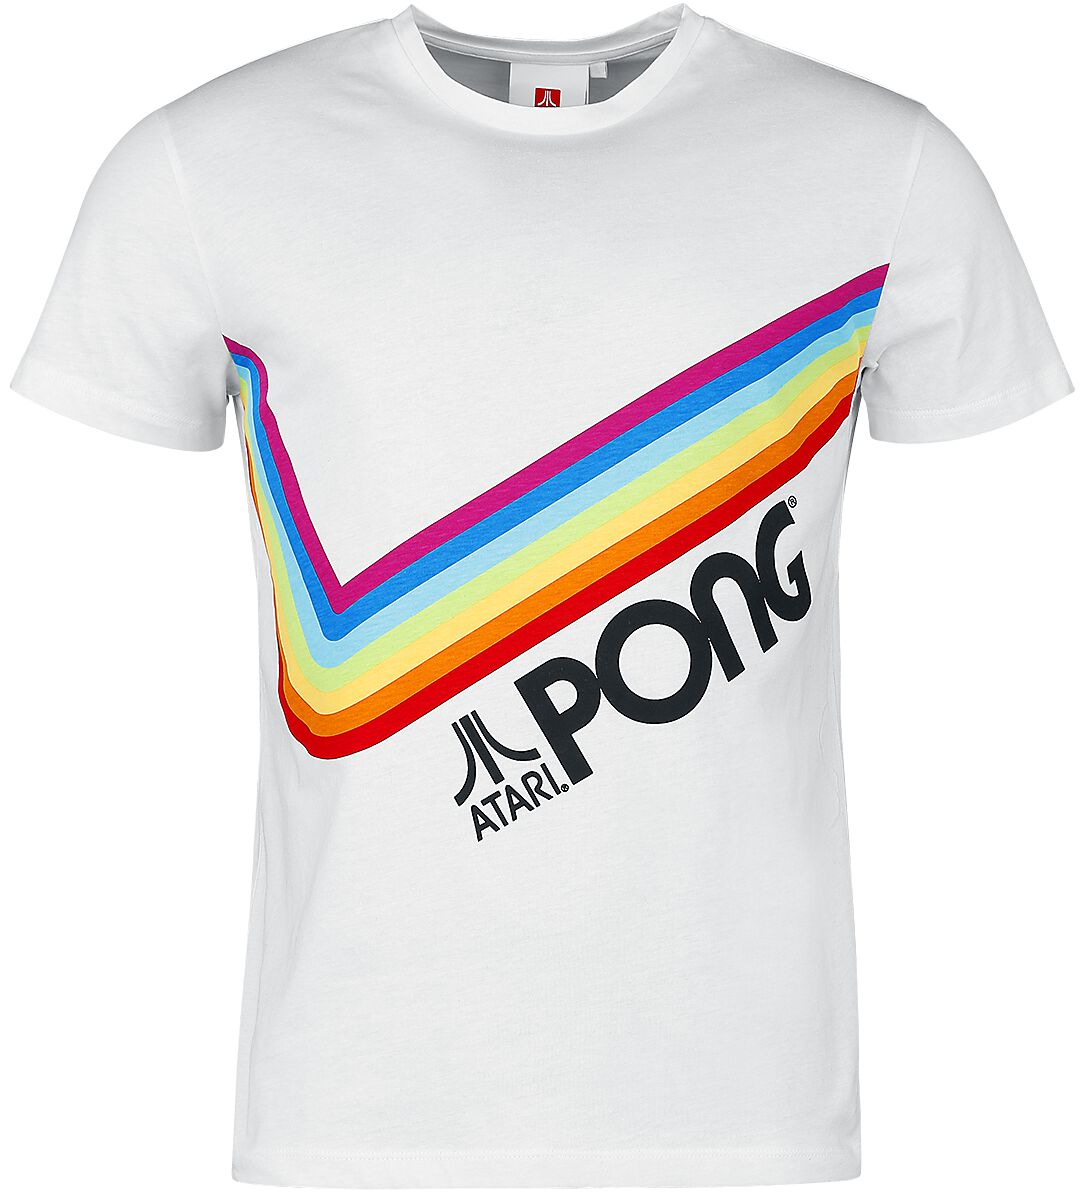 Atari - Gaming T-Shirt - Pong - Pride Rainbow - S bis 3XL - für Männer - Größe M - weiß  - EMP exklusives Merchandise!